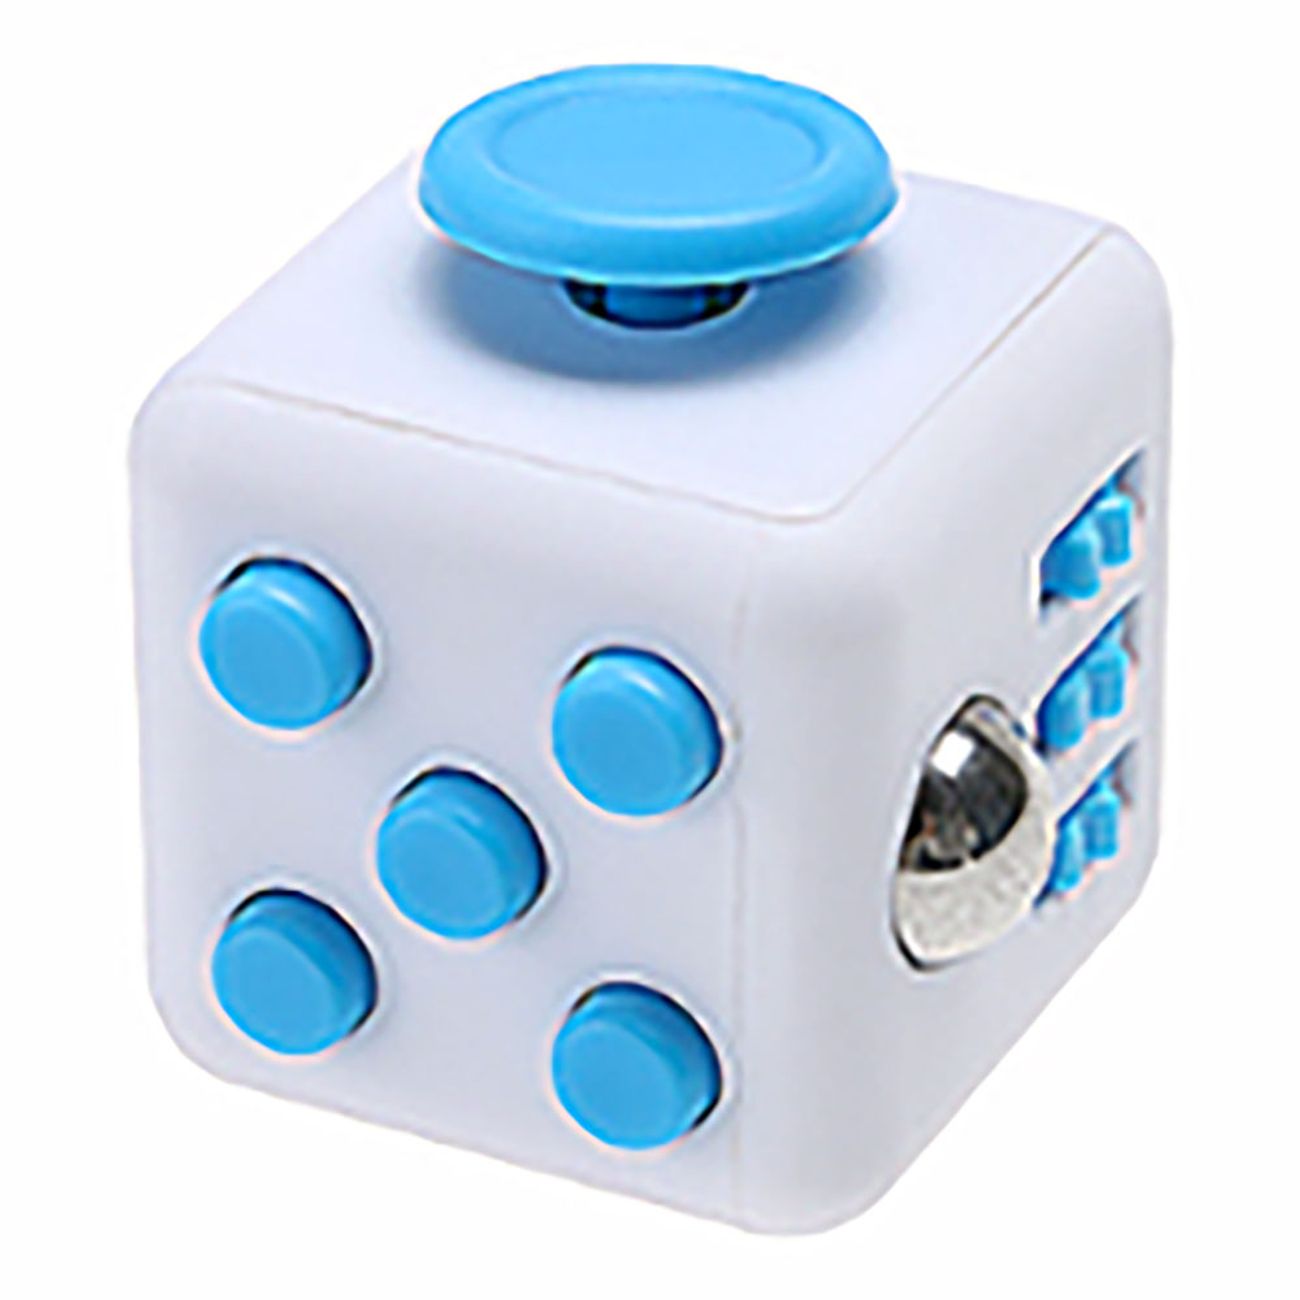 fidget-cube-fidget-toy-36868-28